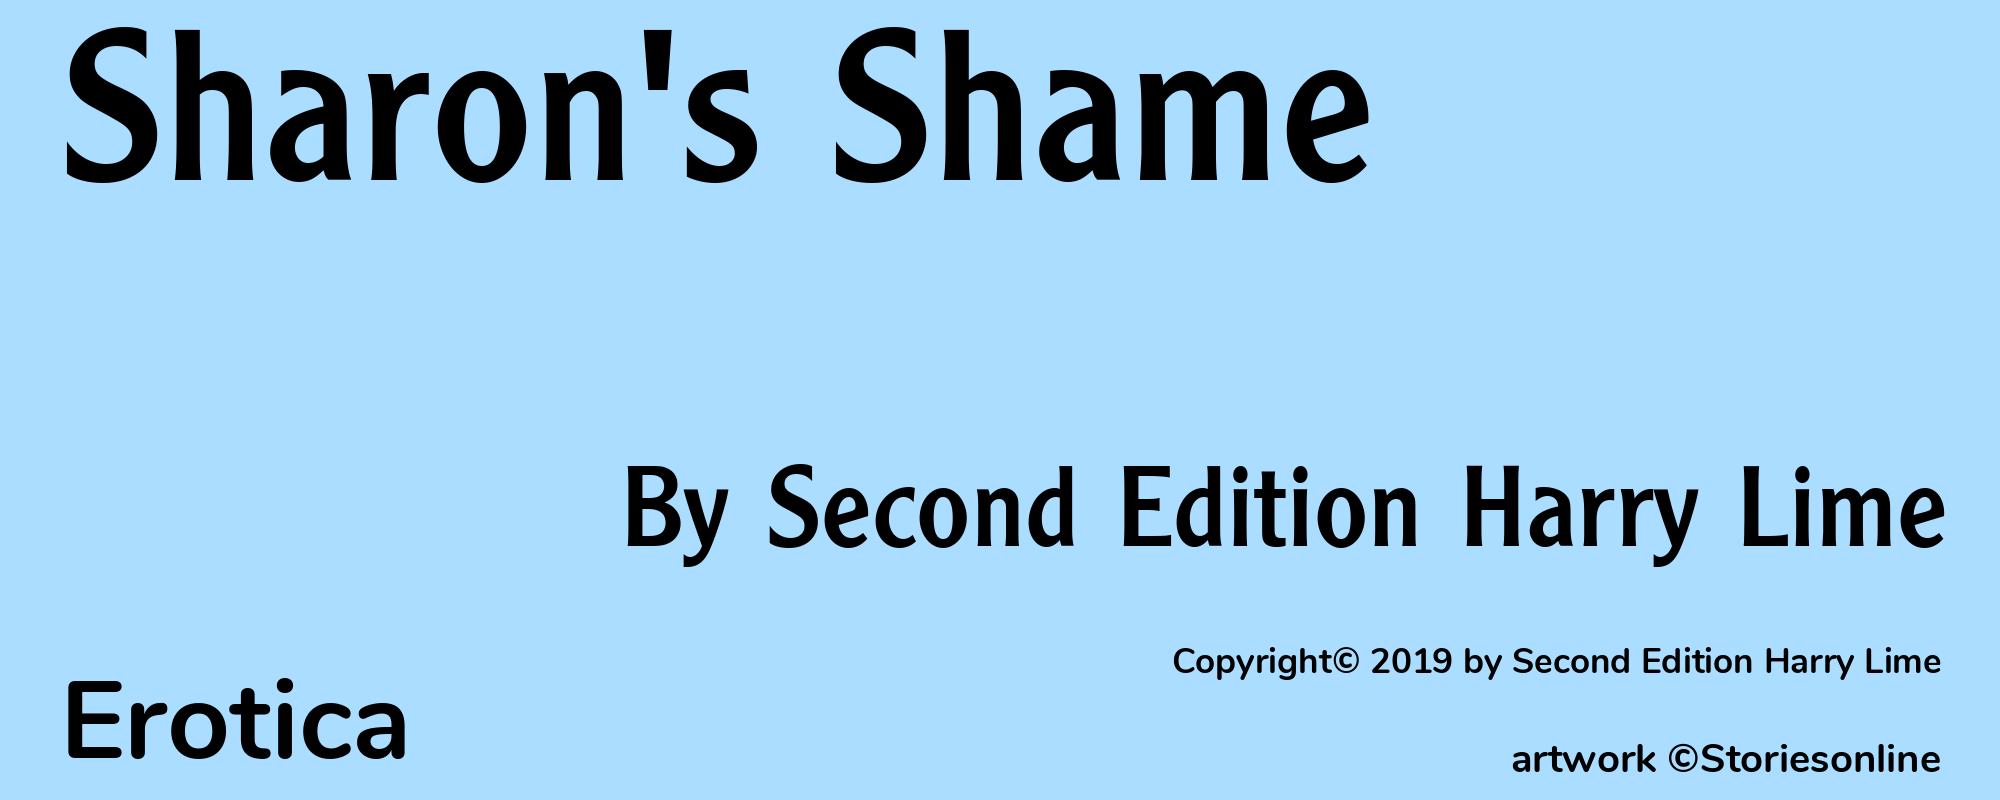 Sharon's Shame - Cover